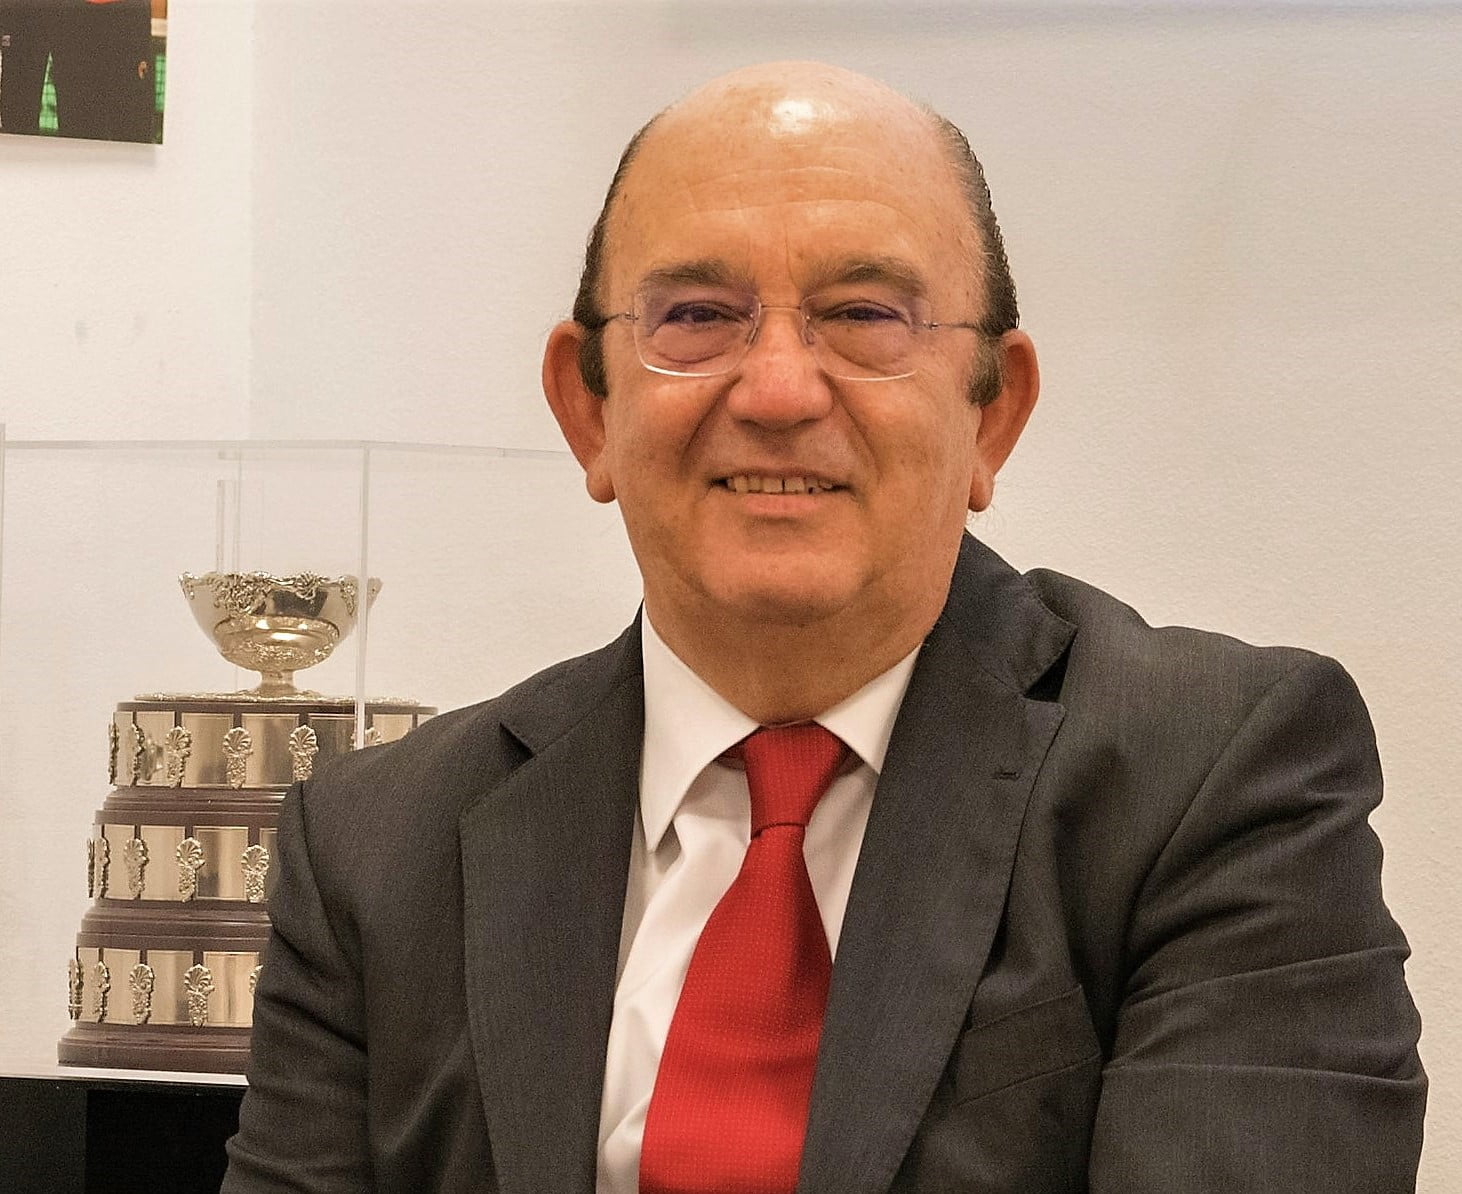 El ex presidente del Club Internacional de Tenis de Majadahonda, reelegido en la Federación Española con 129 votos de 132